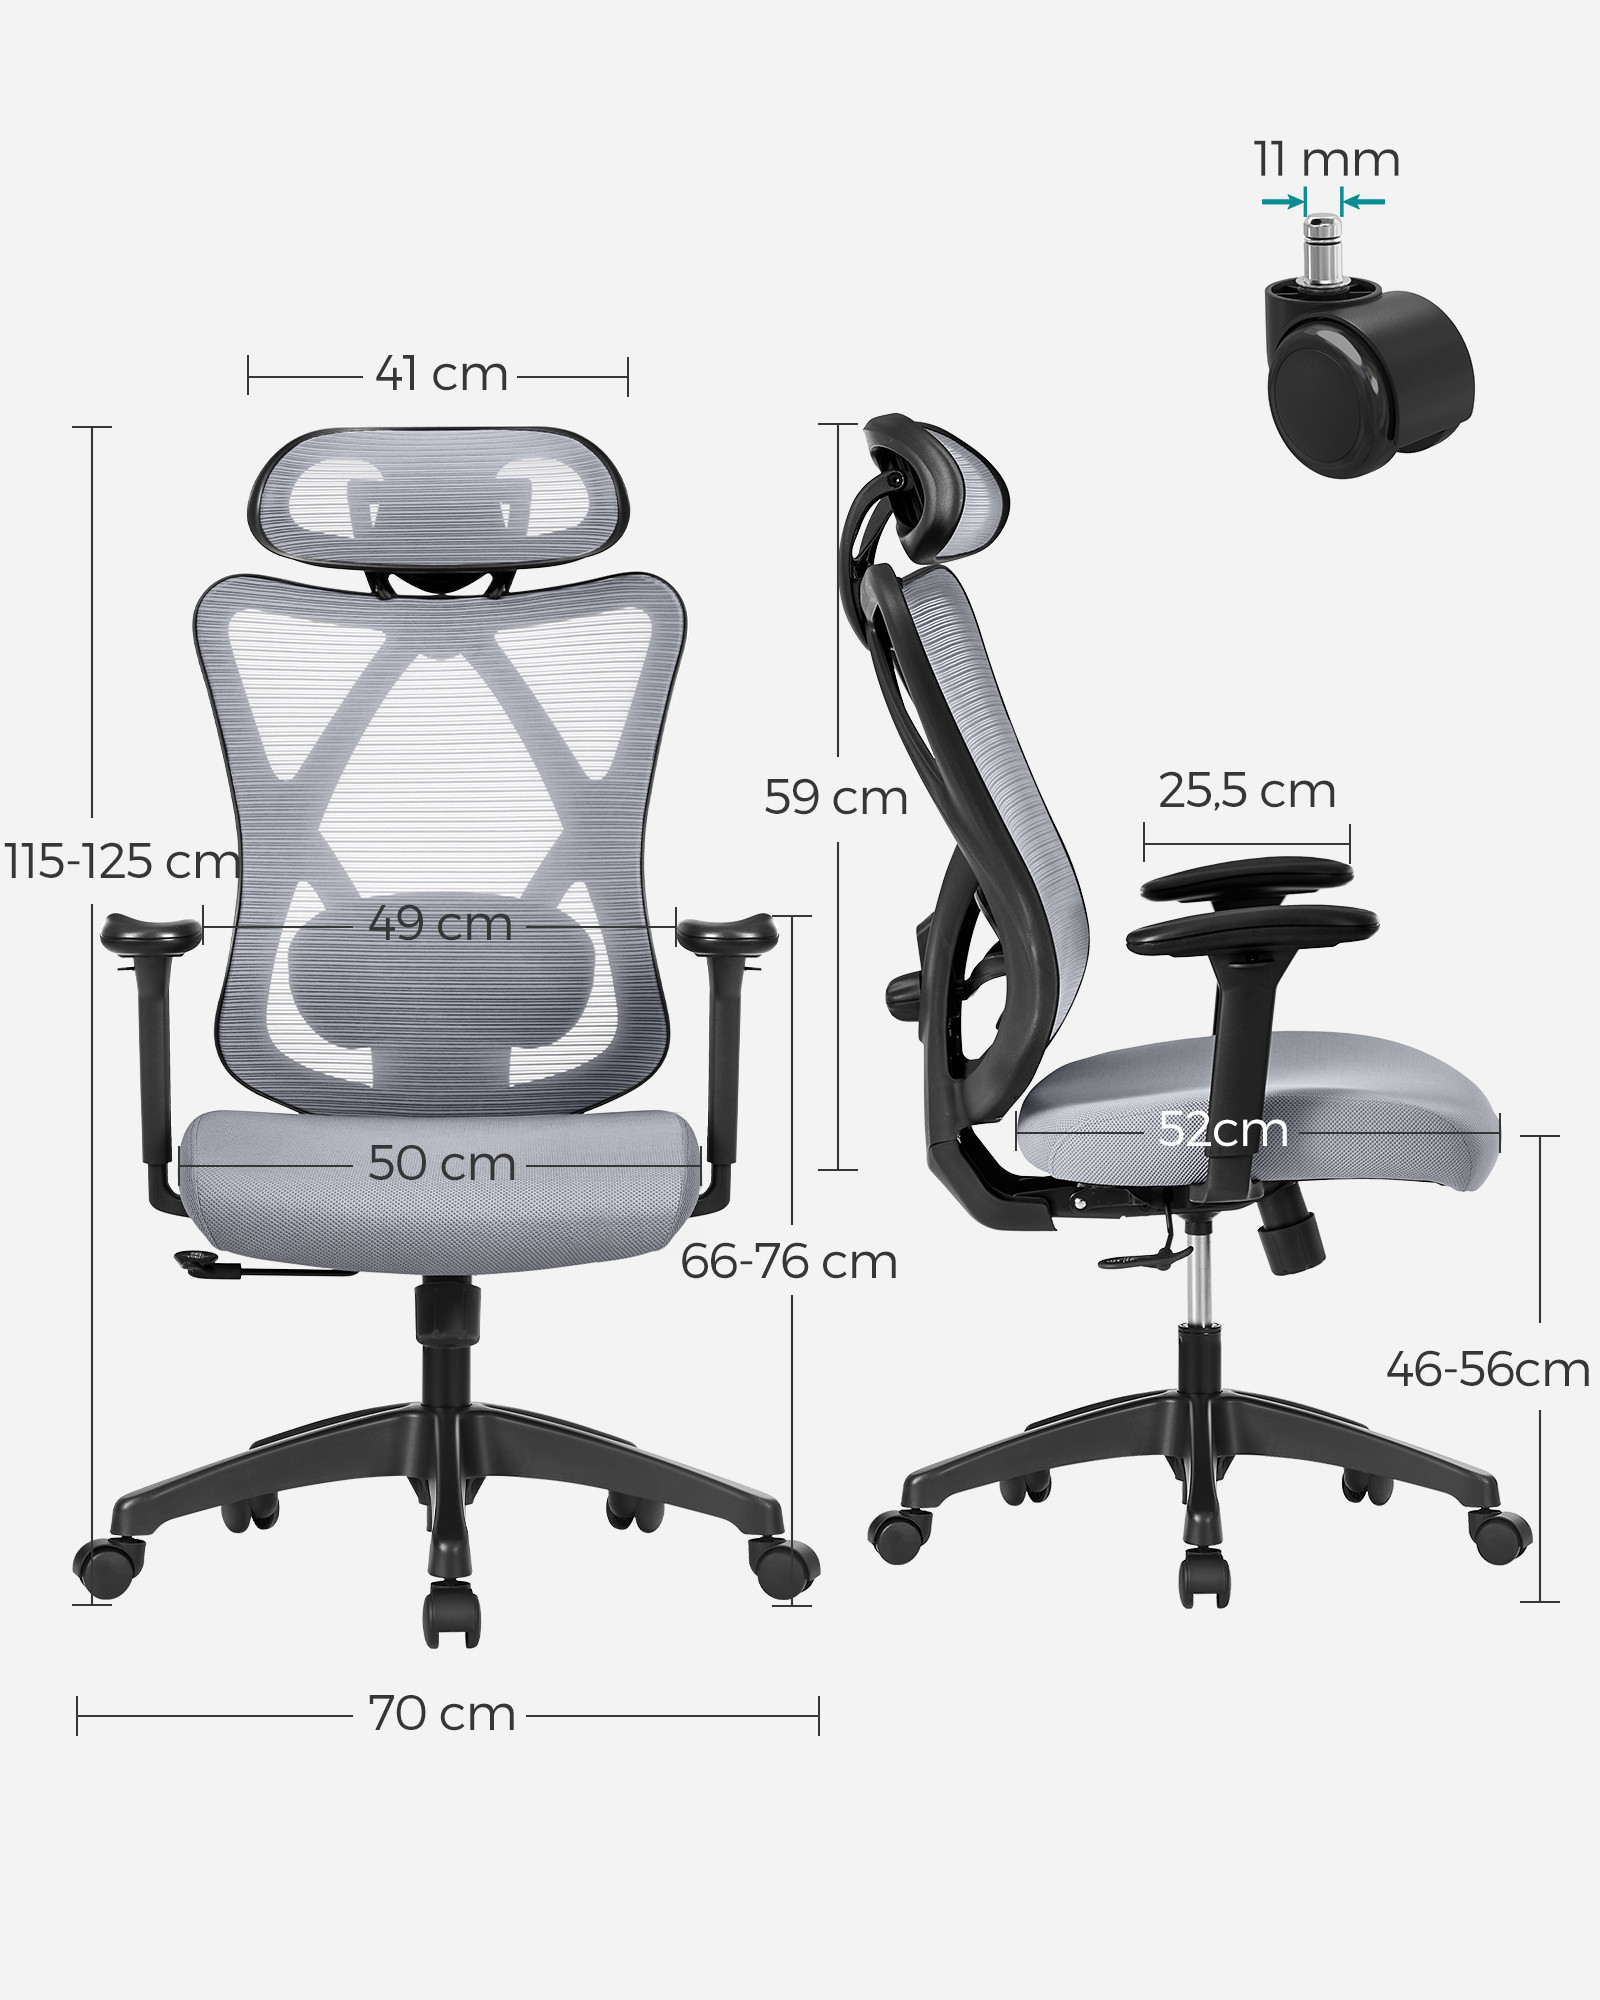 Kancelářská židle OBN063G01